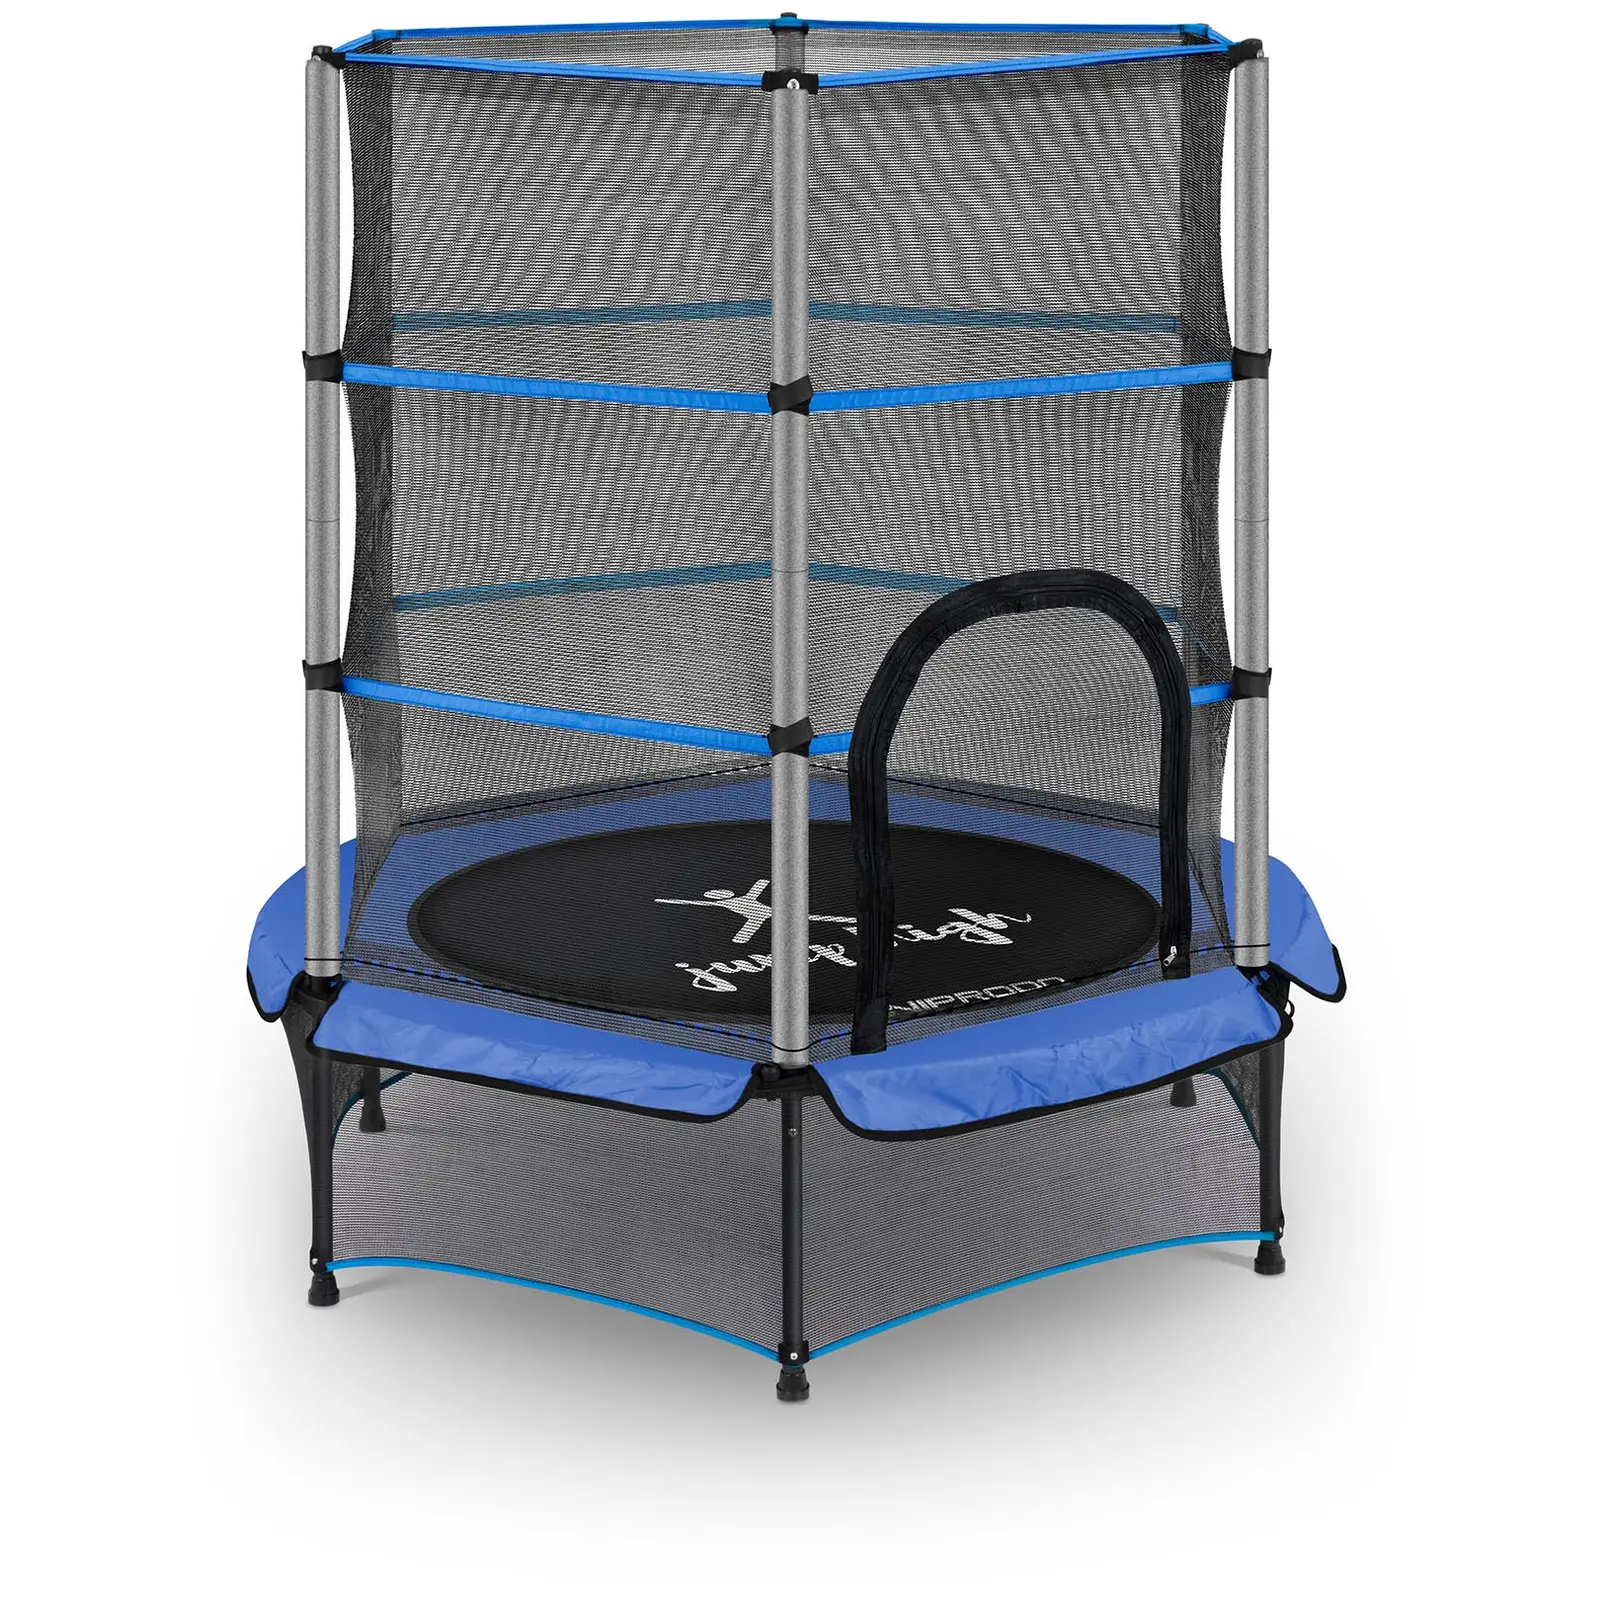 Studsmatta för barn - Med säkerhetsnät - 140 cm - 50 kg - Blå